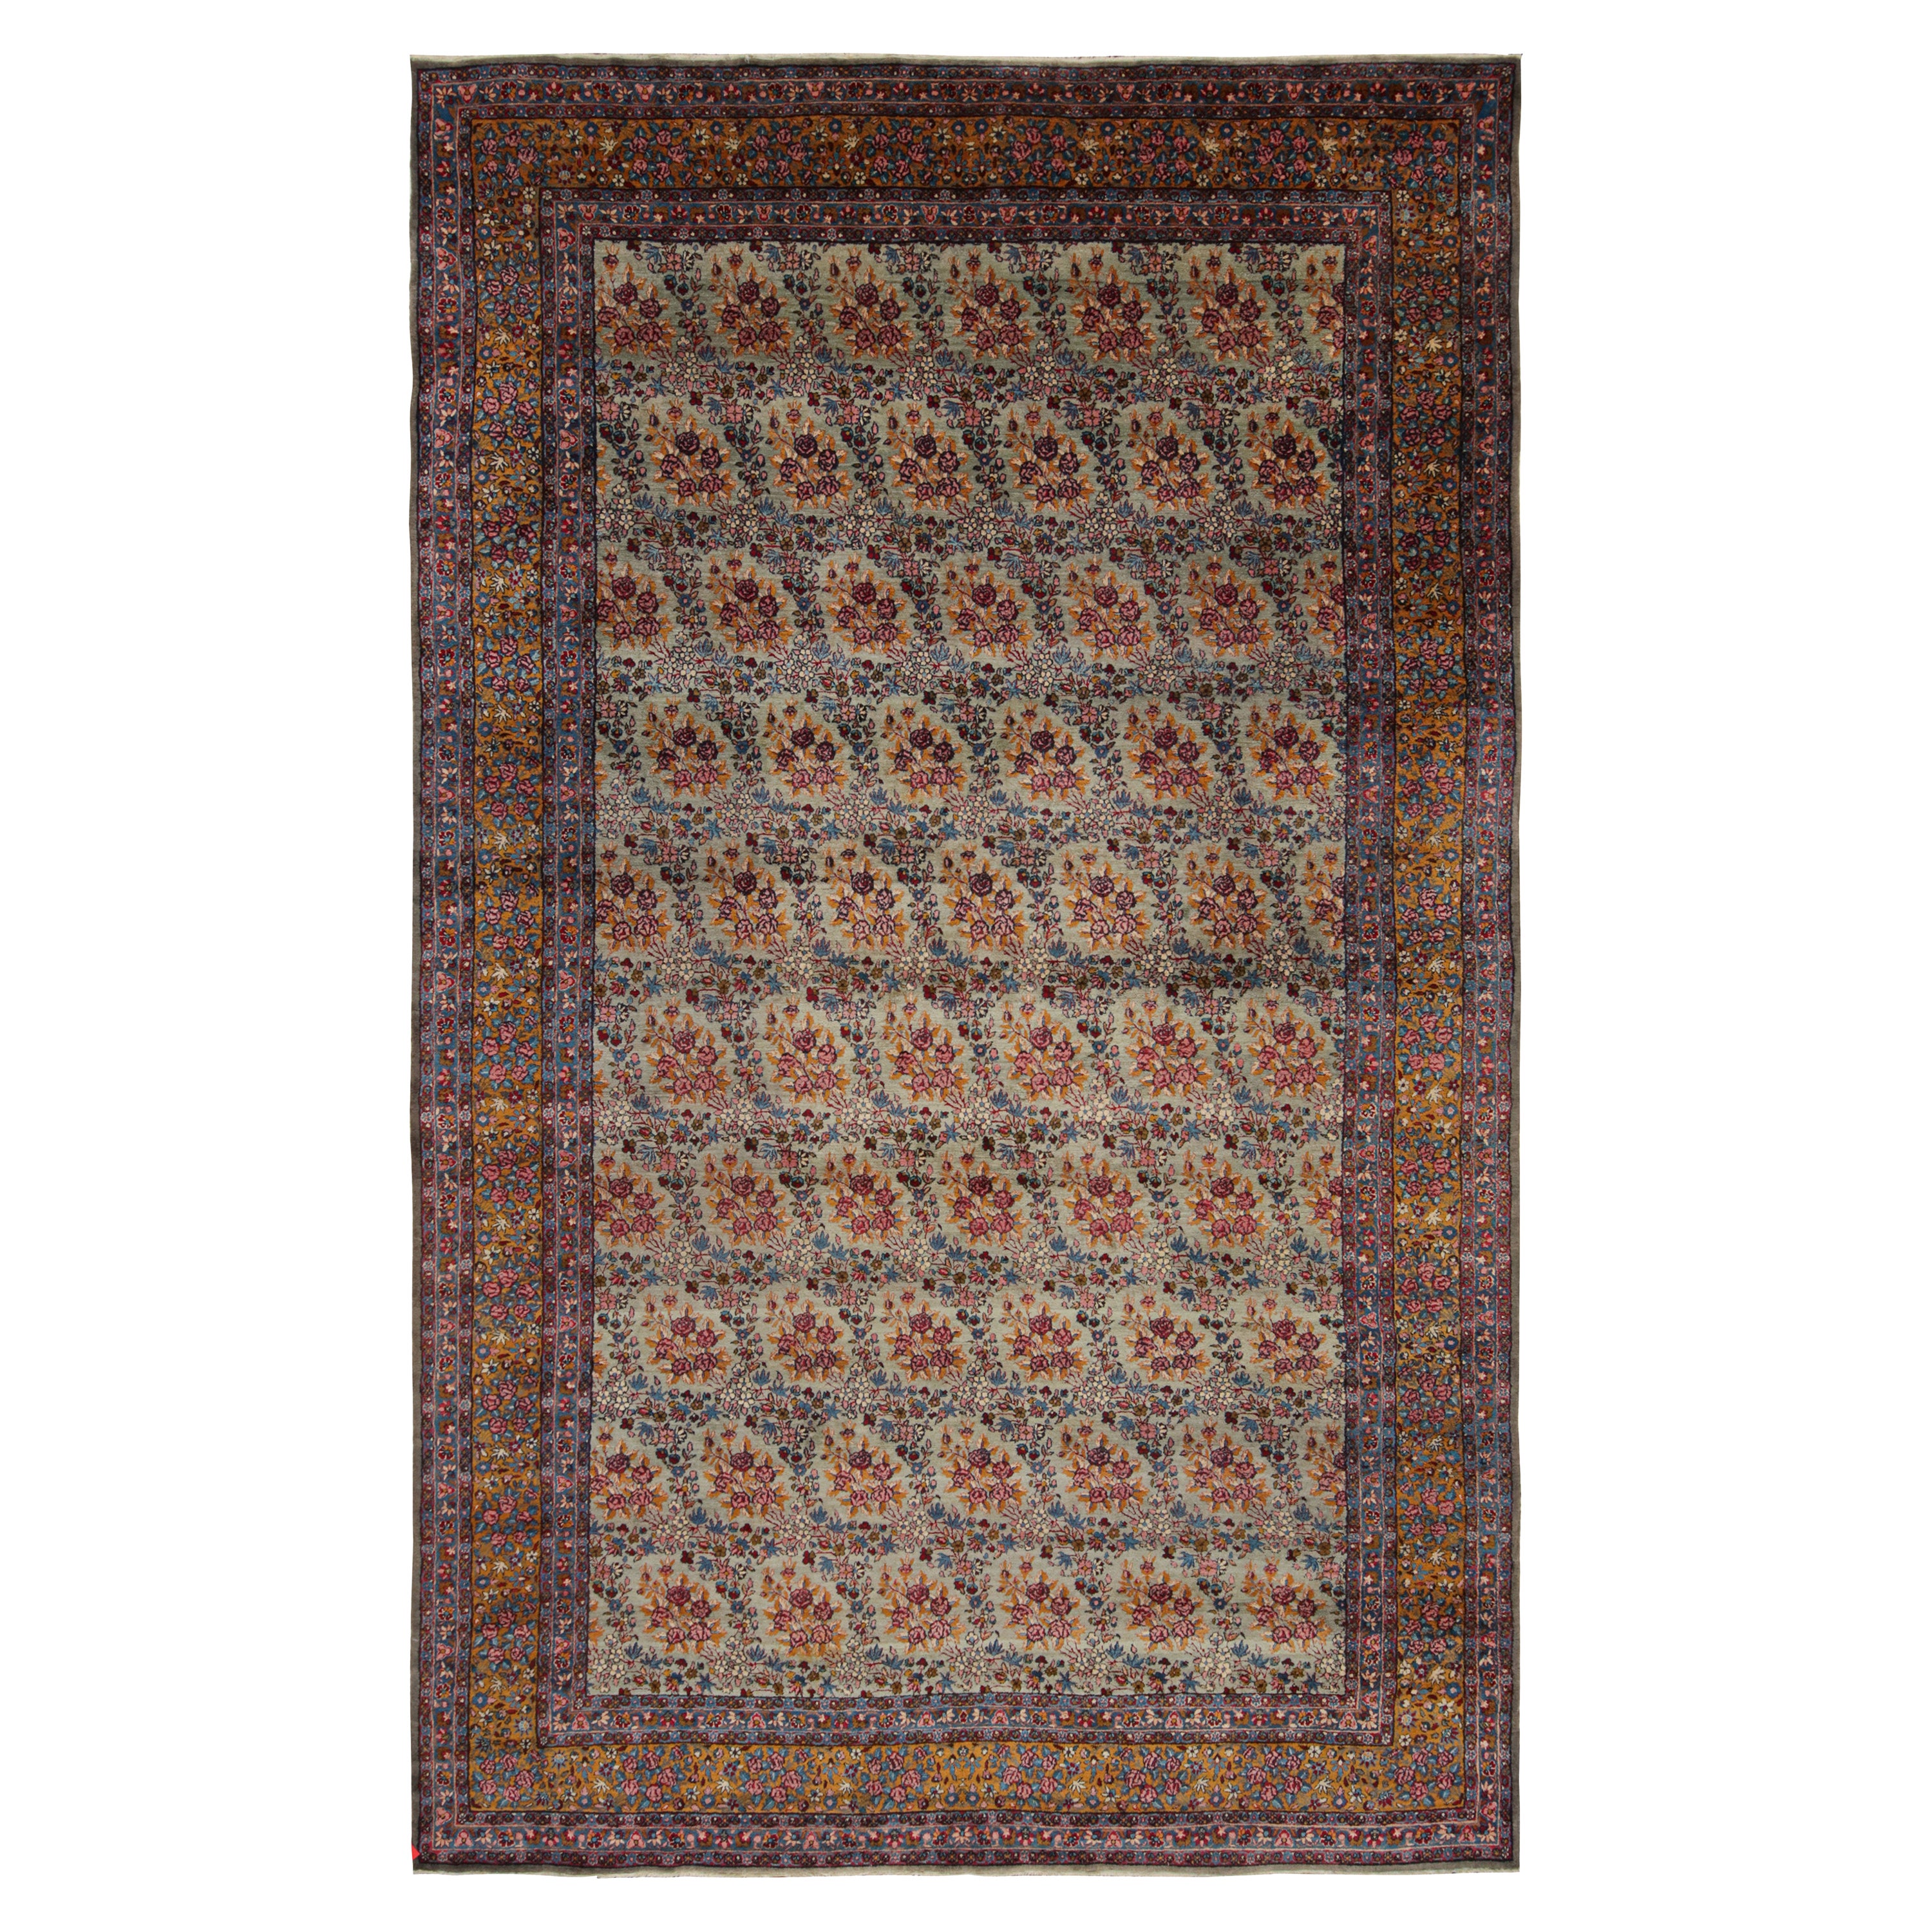 Tapis persan ancien Kerman avec motifs floraux polychromes par Rug & Kilim